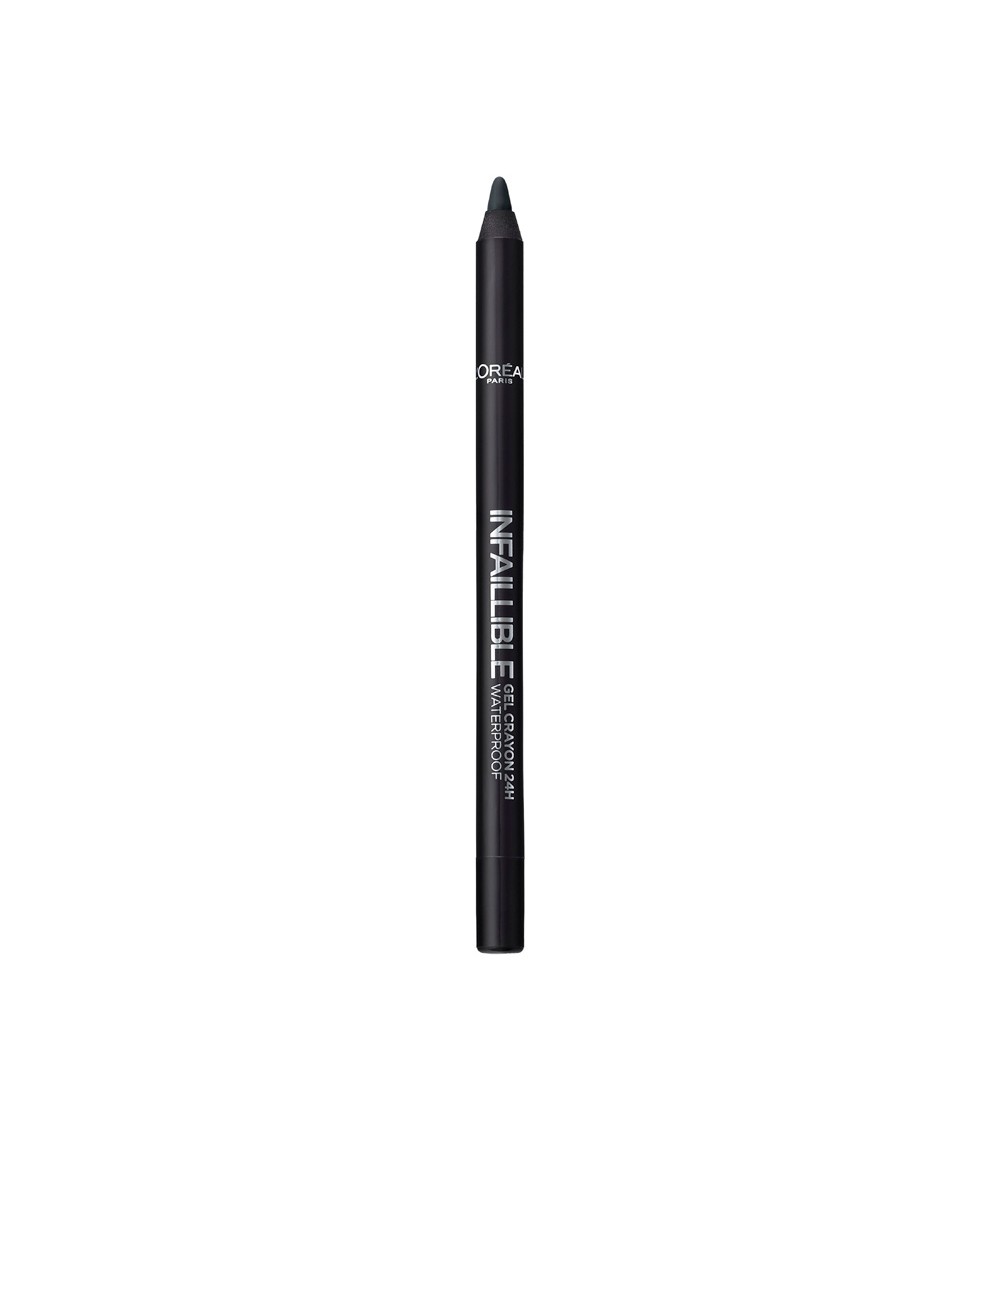 INFAILLIBLE gel crayon 24h waterproof 01-black to black